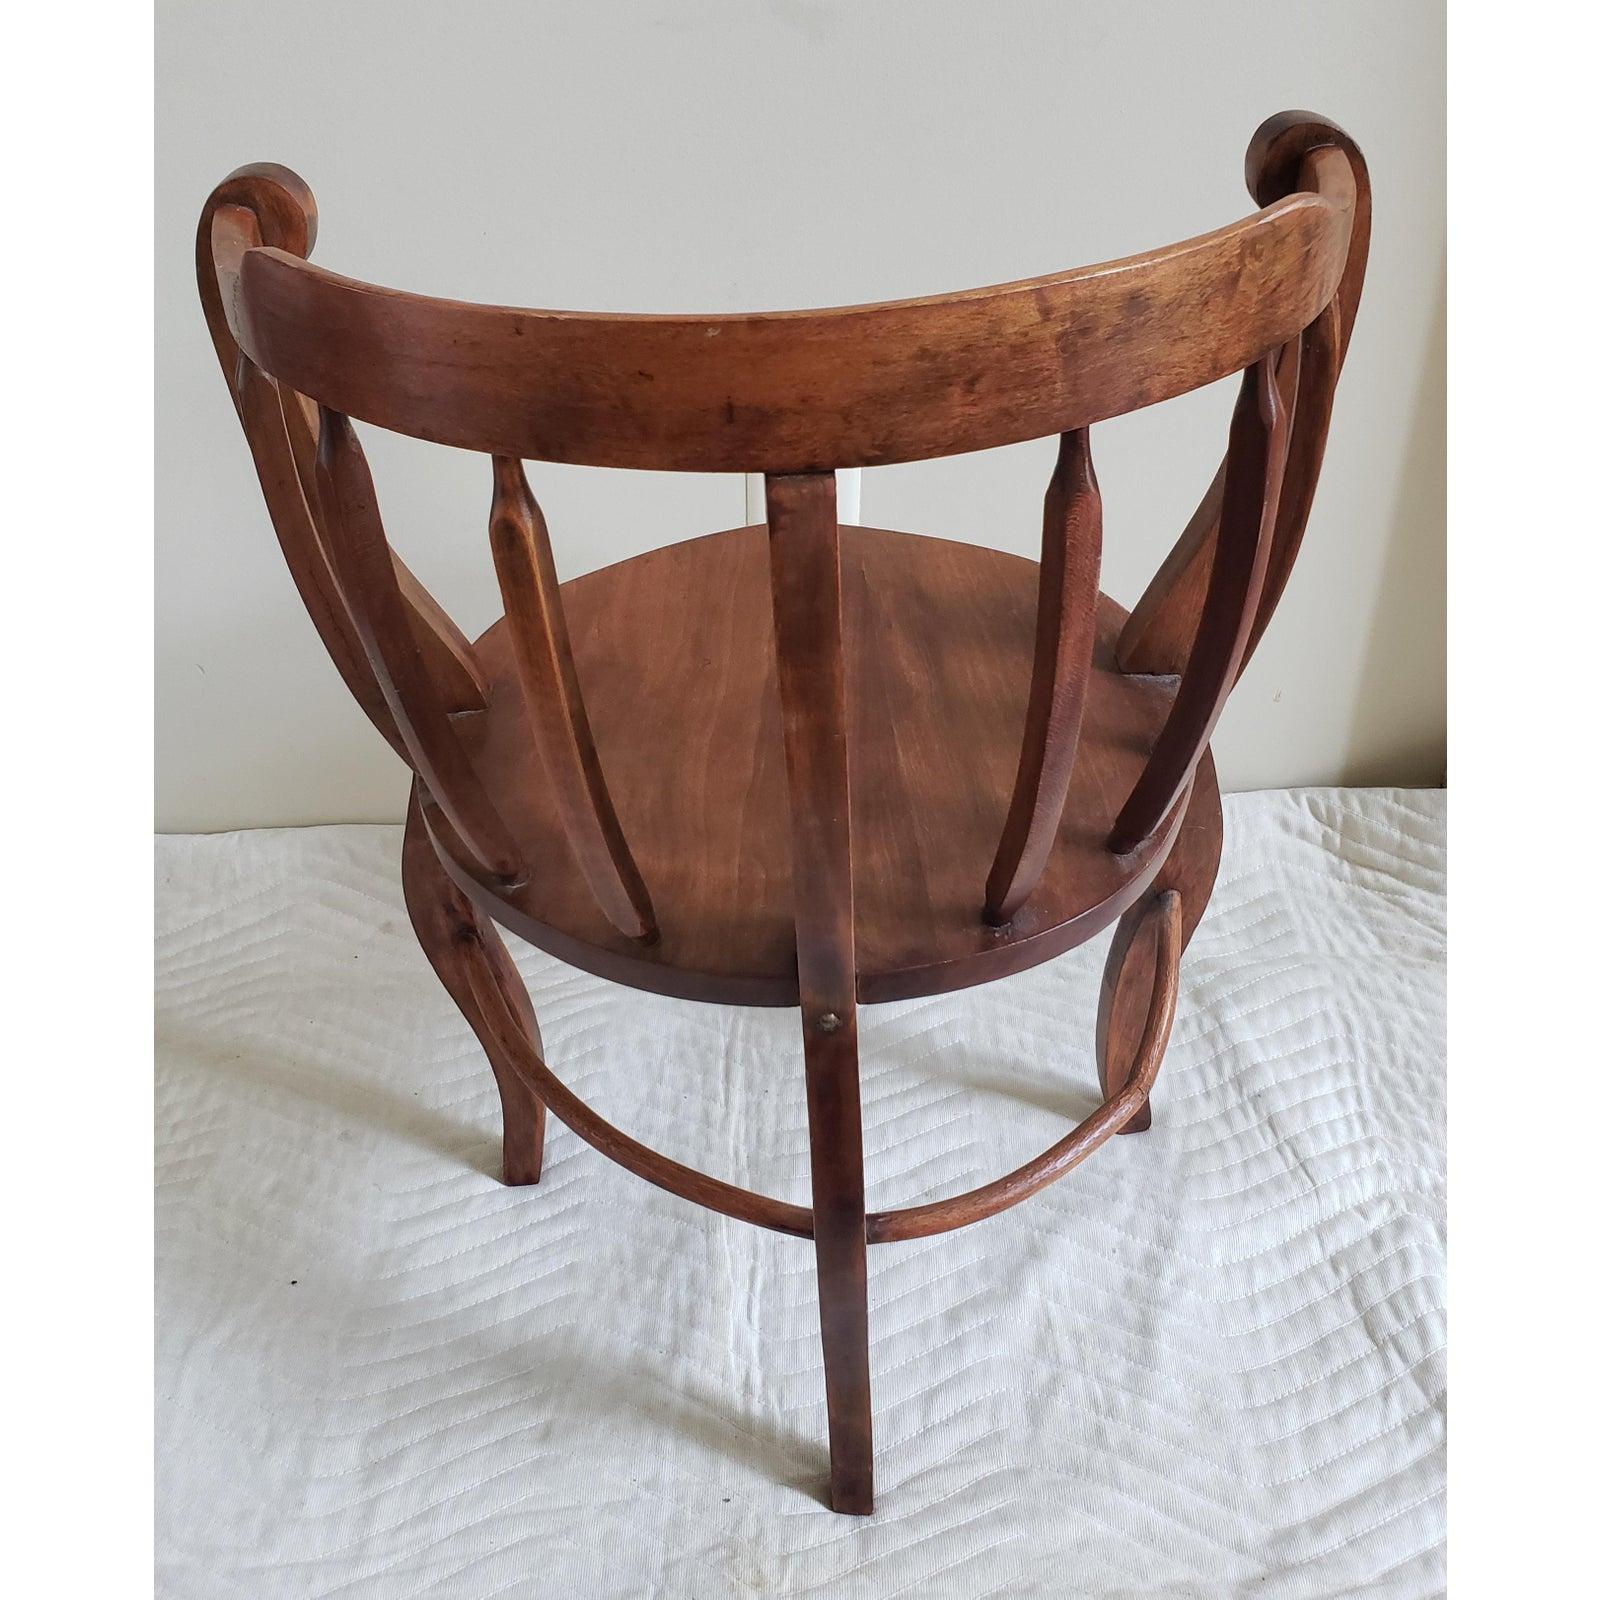 Chaise ronde ancienne avec des pieds reliés à la vigne. Bon état vintage. La chaise mesure 23 W x 20 D x 30 H.
    